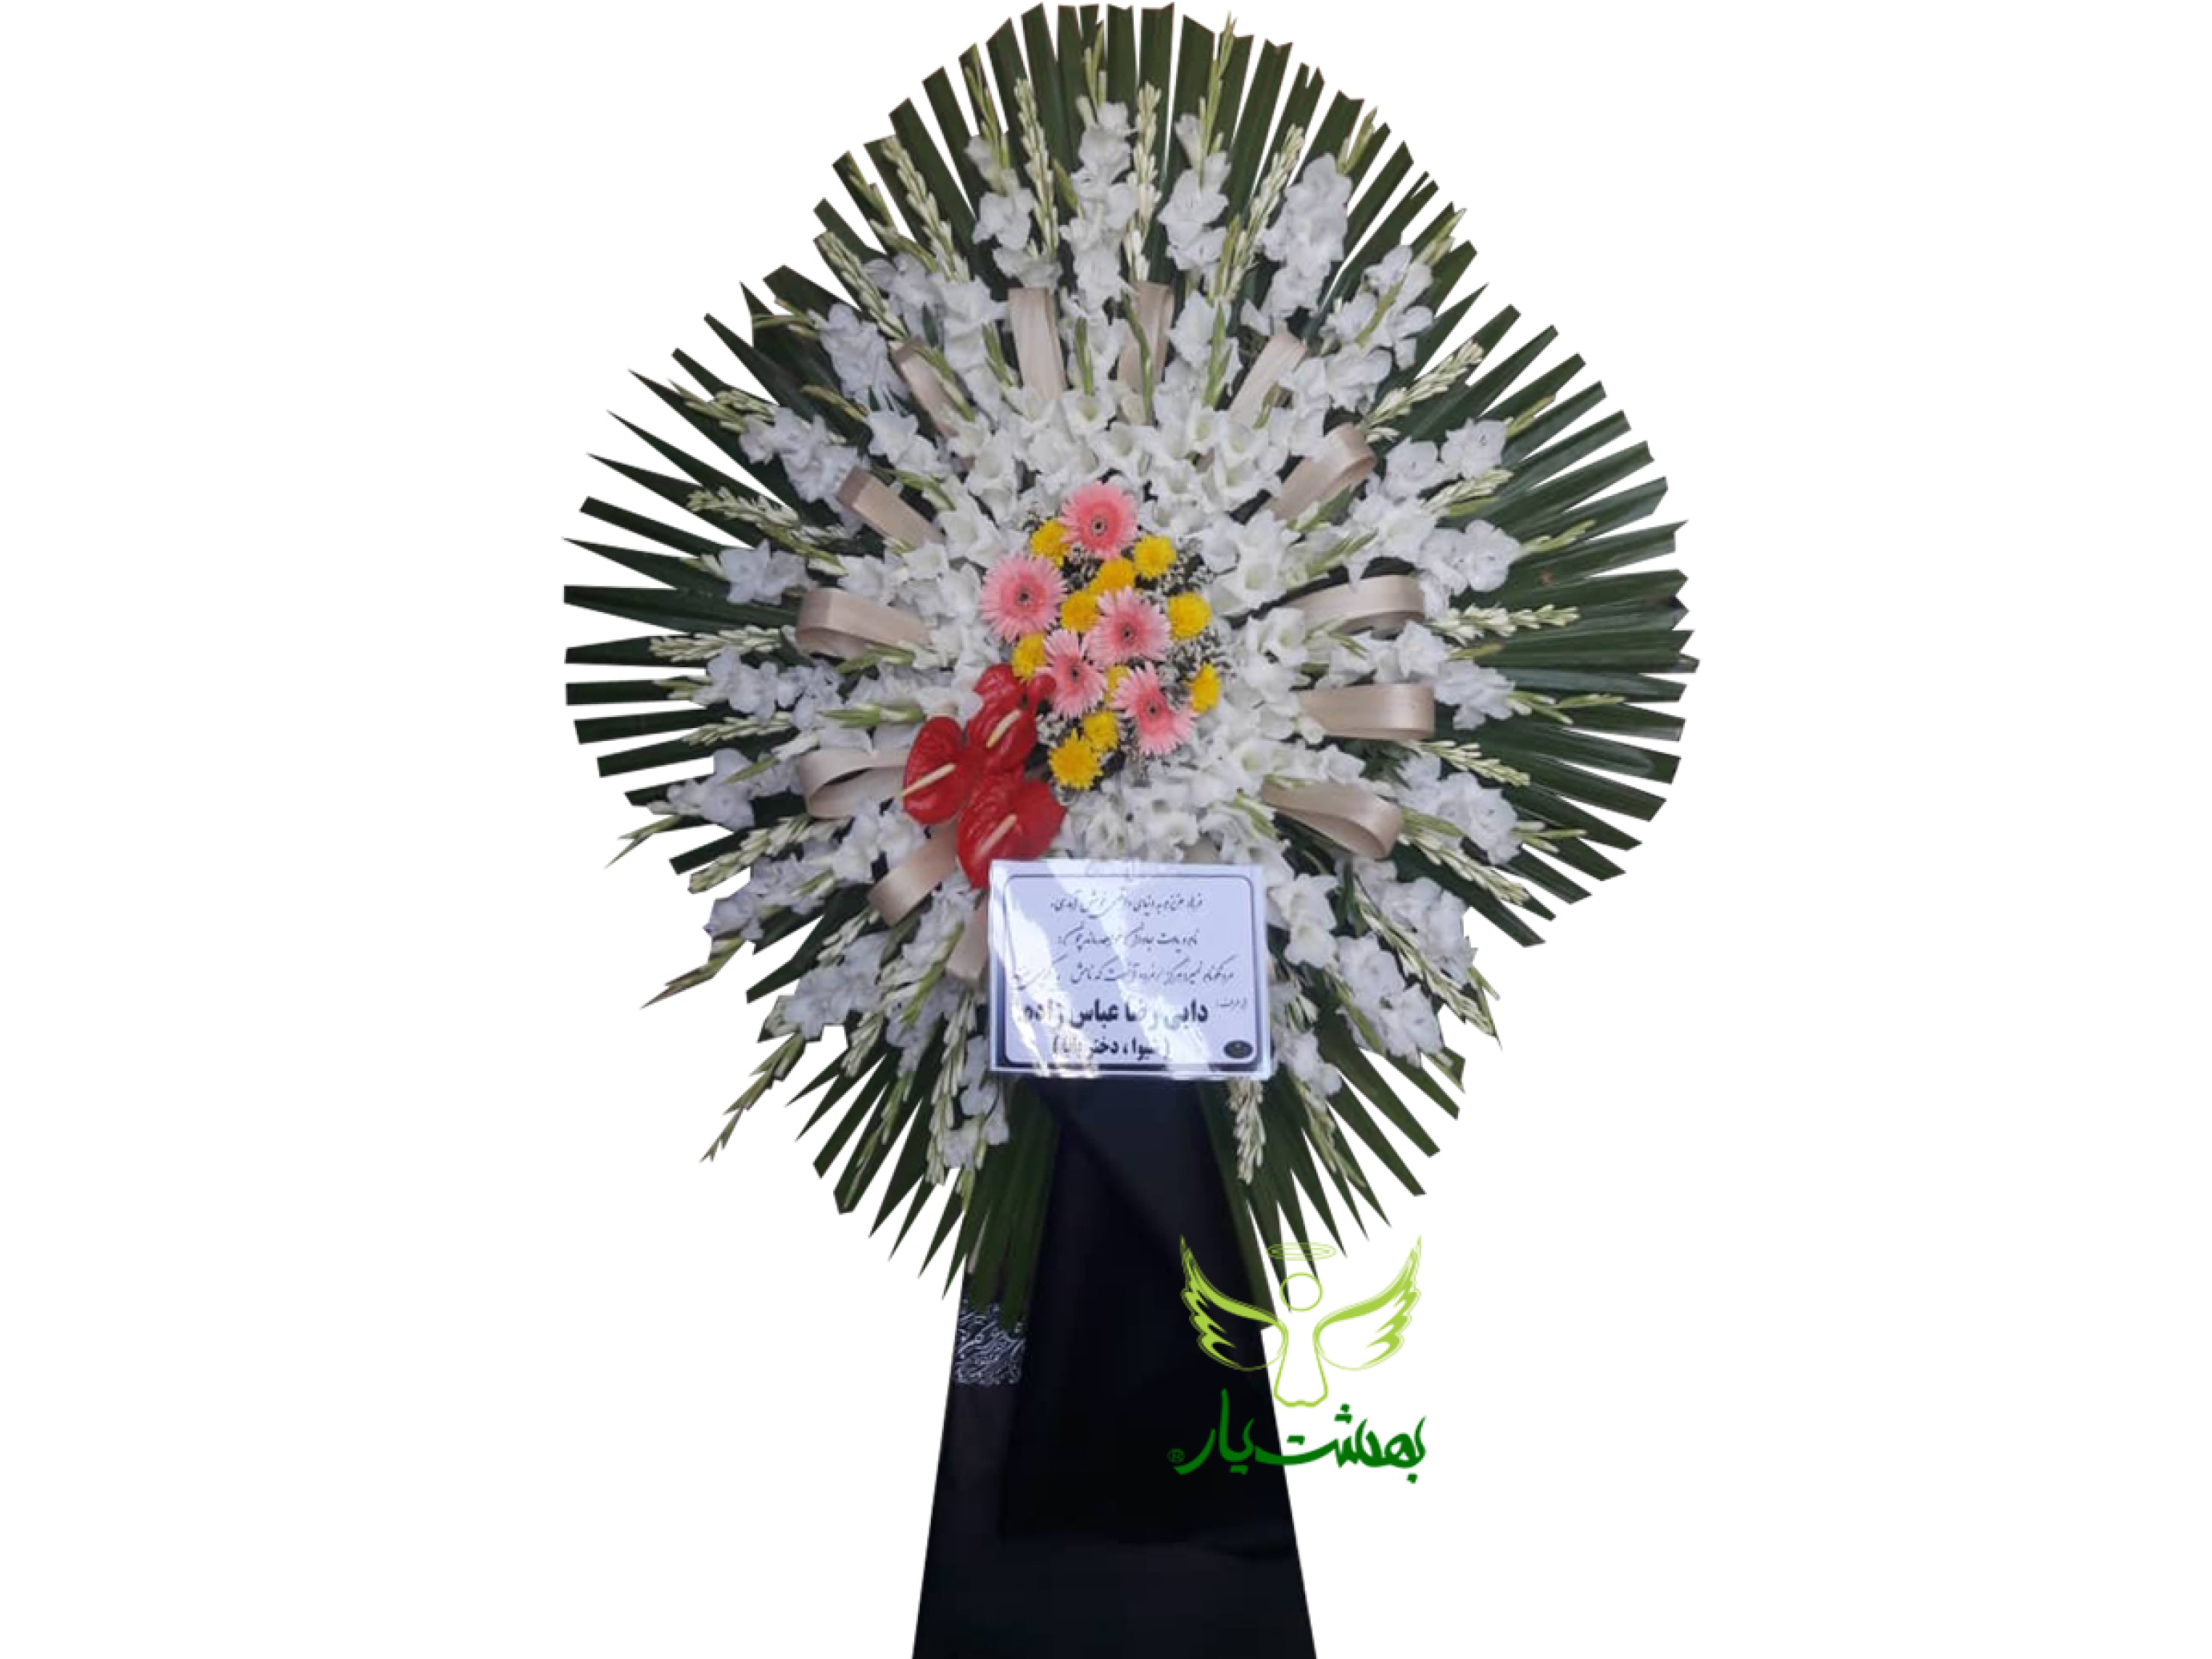  خرید آنلاین تاج گل ختم ارزان در بهشت یار 